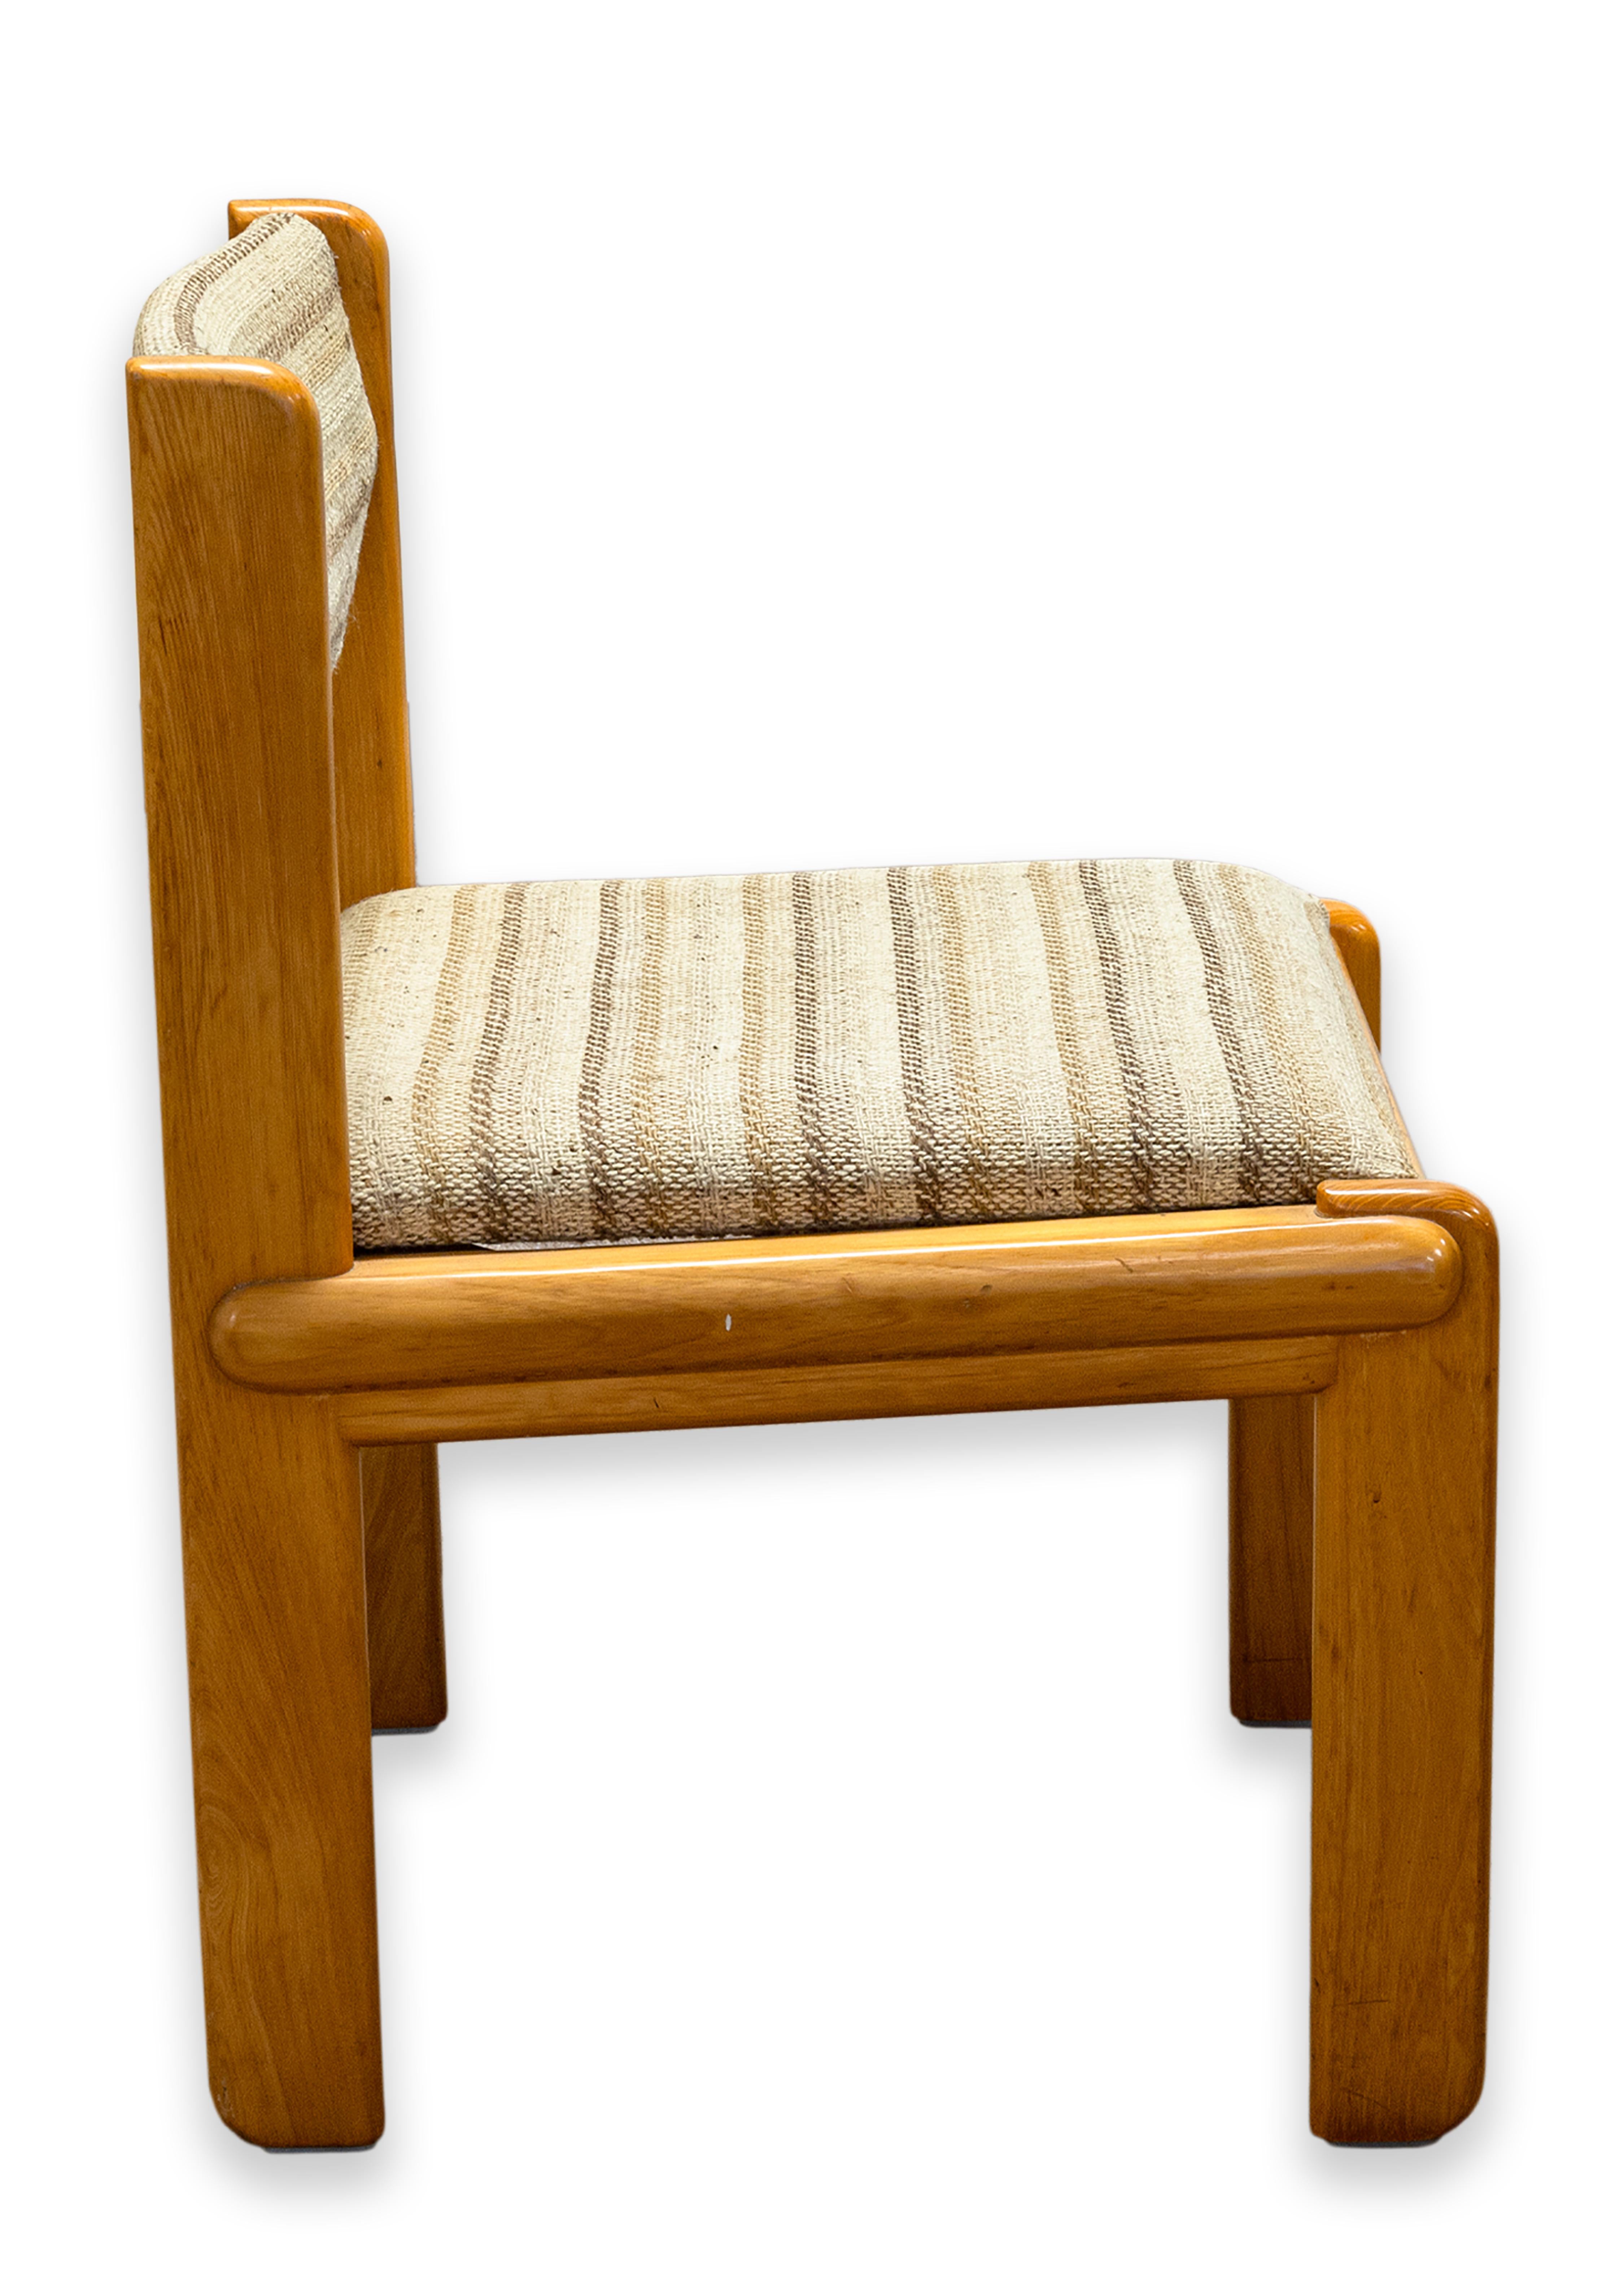 Exemple de chaise d'appoint conçue par Ralph Rye pour Thonet. Chaise assortie à la table de salle à manger ou de conférence modèle 879.100. Fabriqué en 1977. Cadre en orme massif avec tissu d'ameublement à rayures marron clair. Motif en bois emboîté